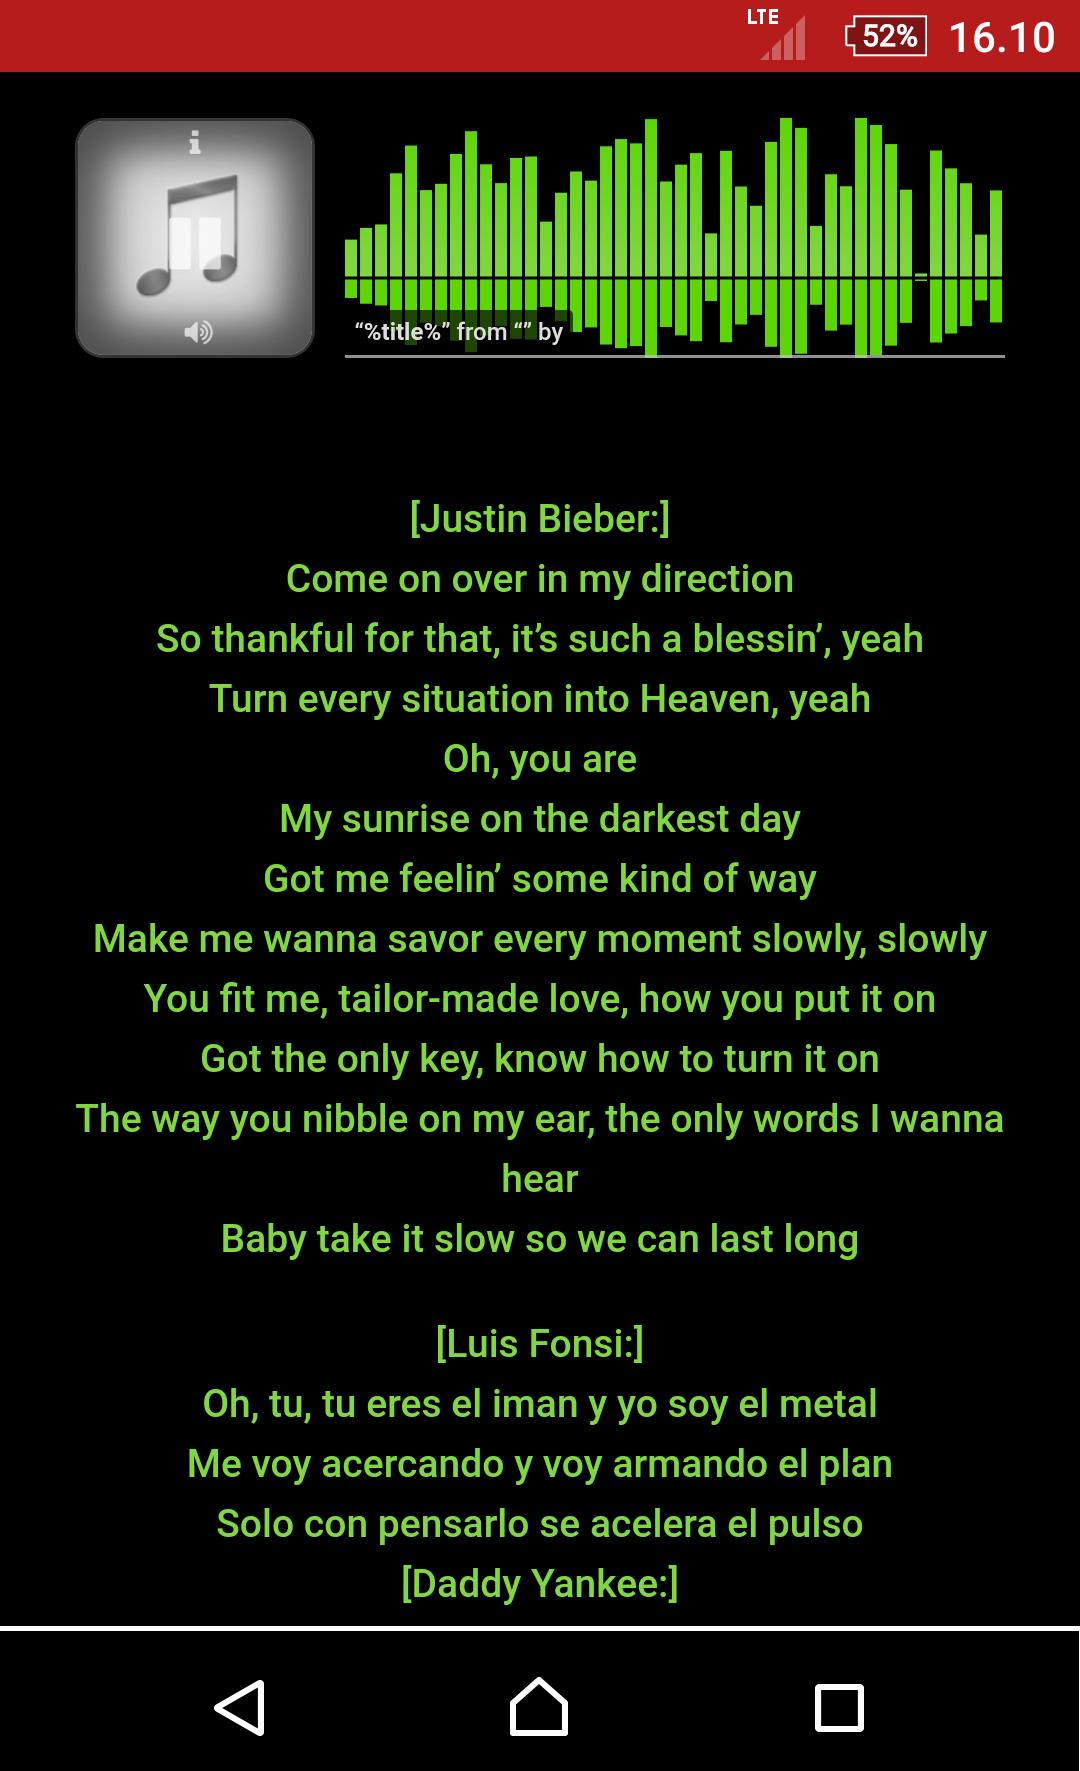 Luis Fonsi - Despacito - Lyrics для Андроид - скачать APK